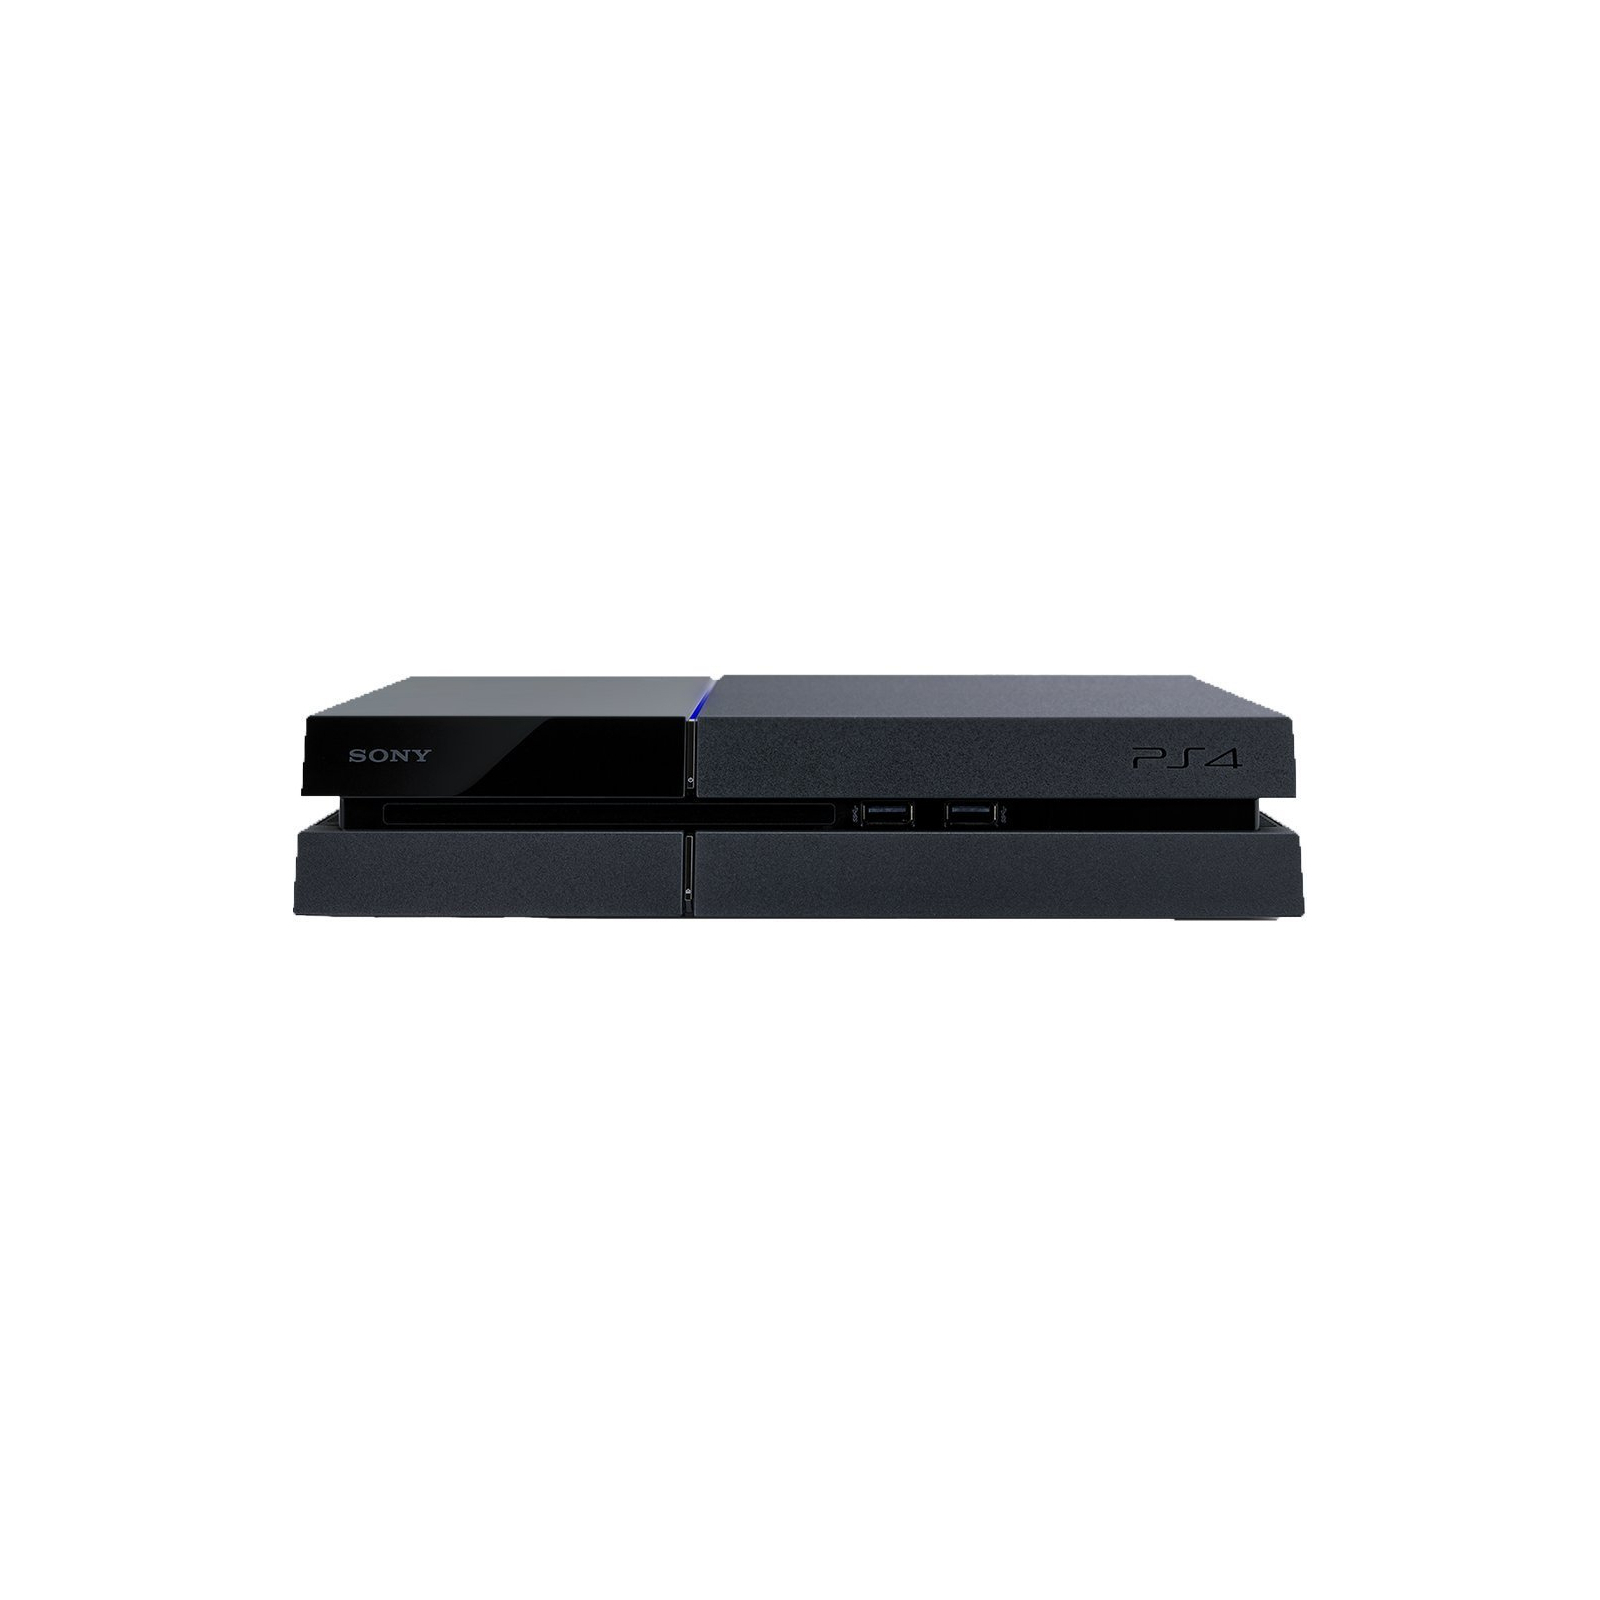 Игровая консоль Sony PlayStation 4 500GB + GTA V (PS719874713) изображение 2